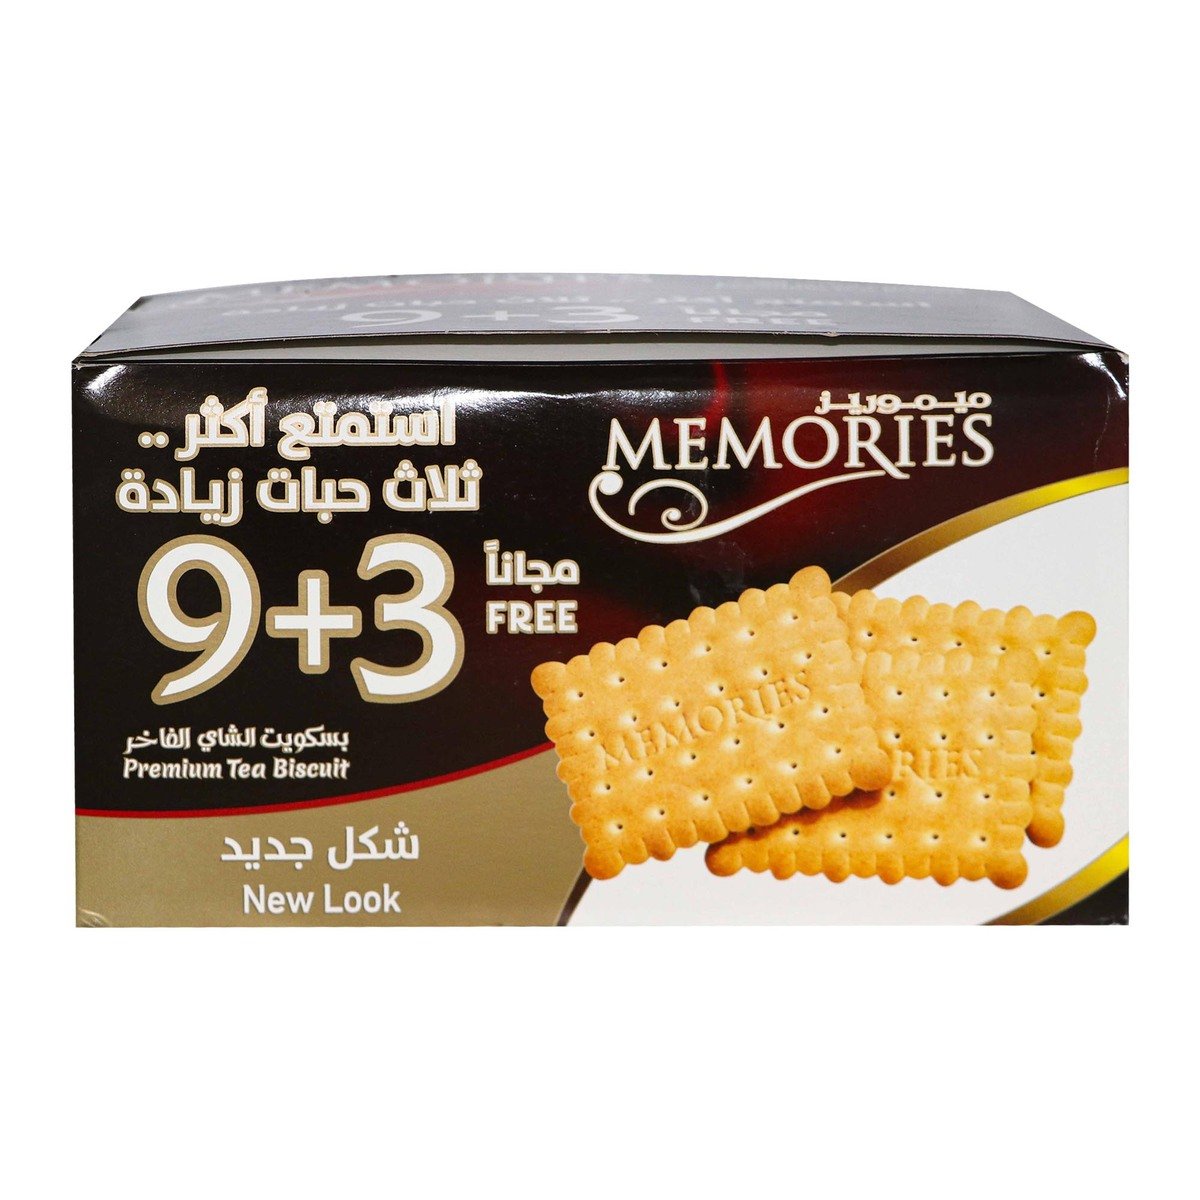 Buy Memories Tea Biscuits 80g 9+3 Online at Best Price | Plain Biscuits | Lulu KSA in Saudi Arabia